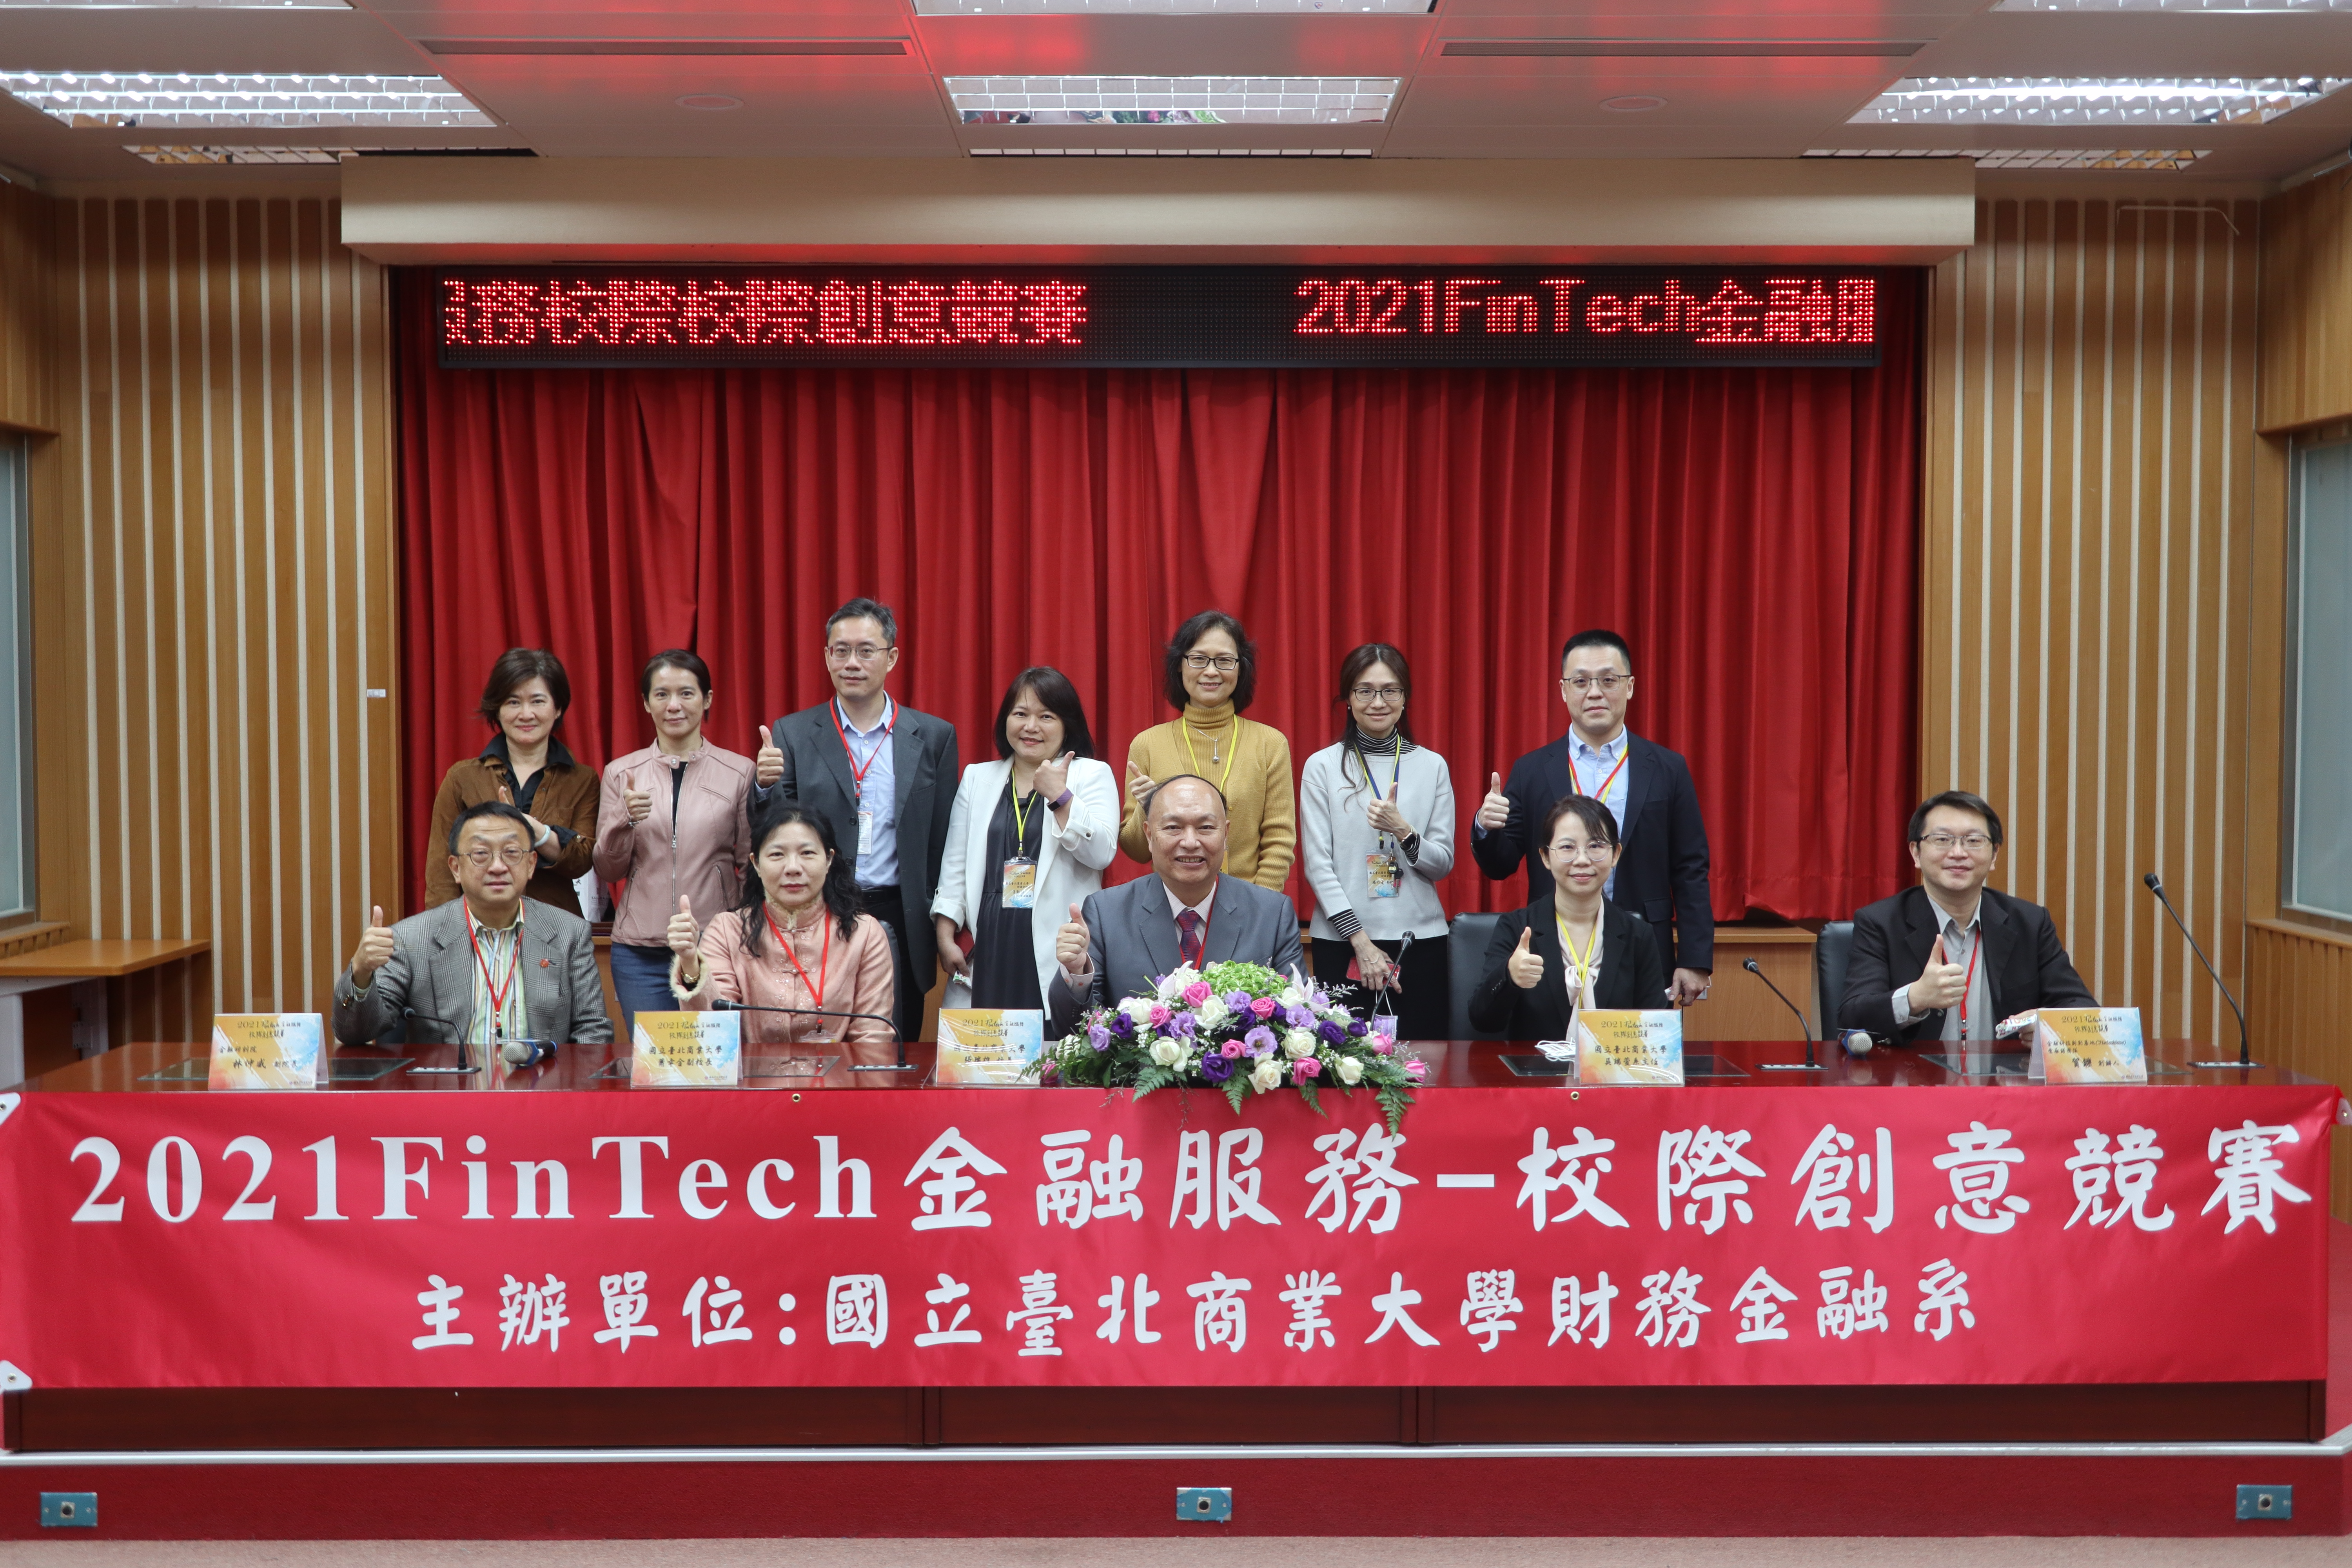 2021 FinTech金融服務-校際創意競賽